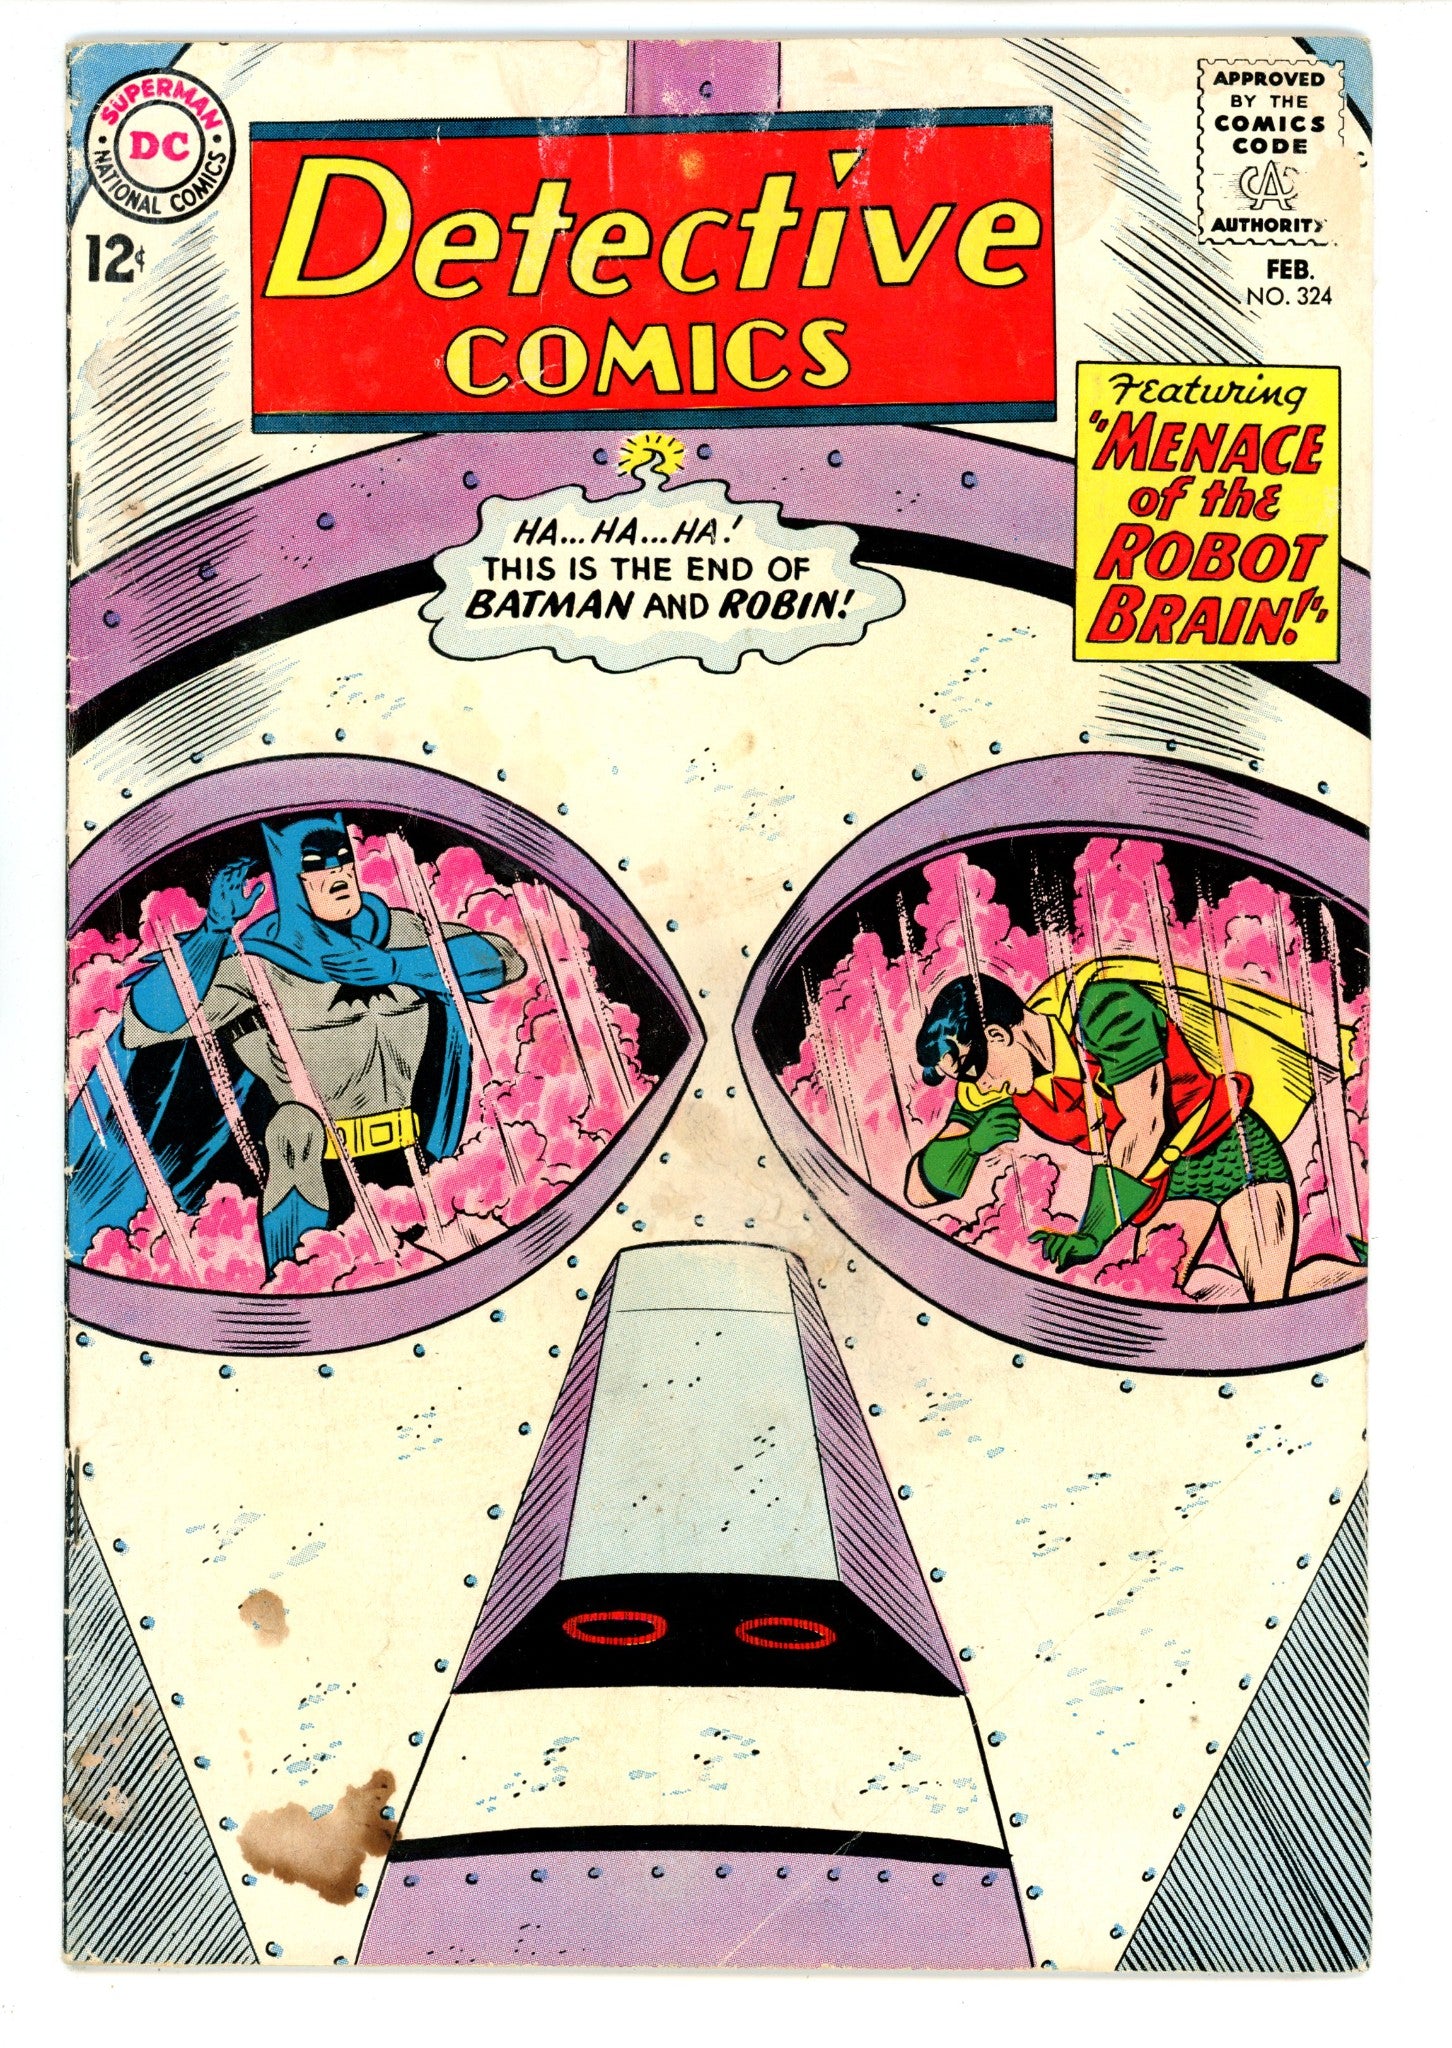 Detective Comics Vol 1 324 VG- (3.5) (1964) 